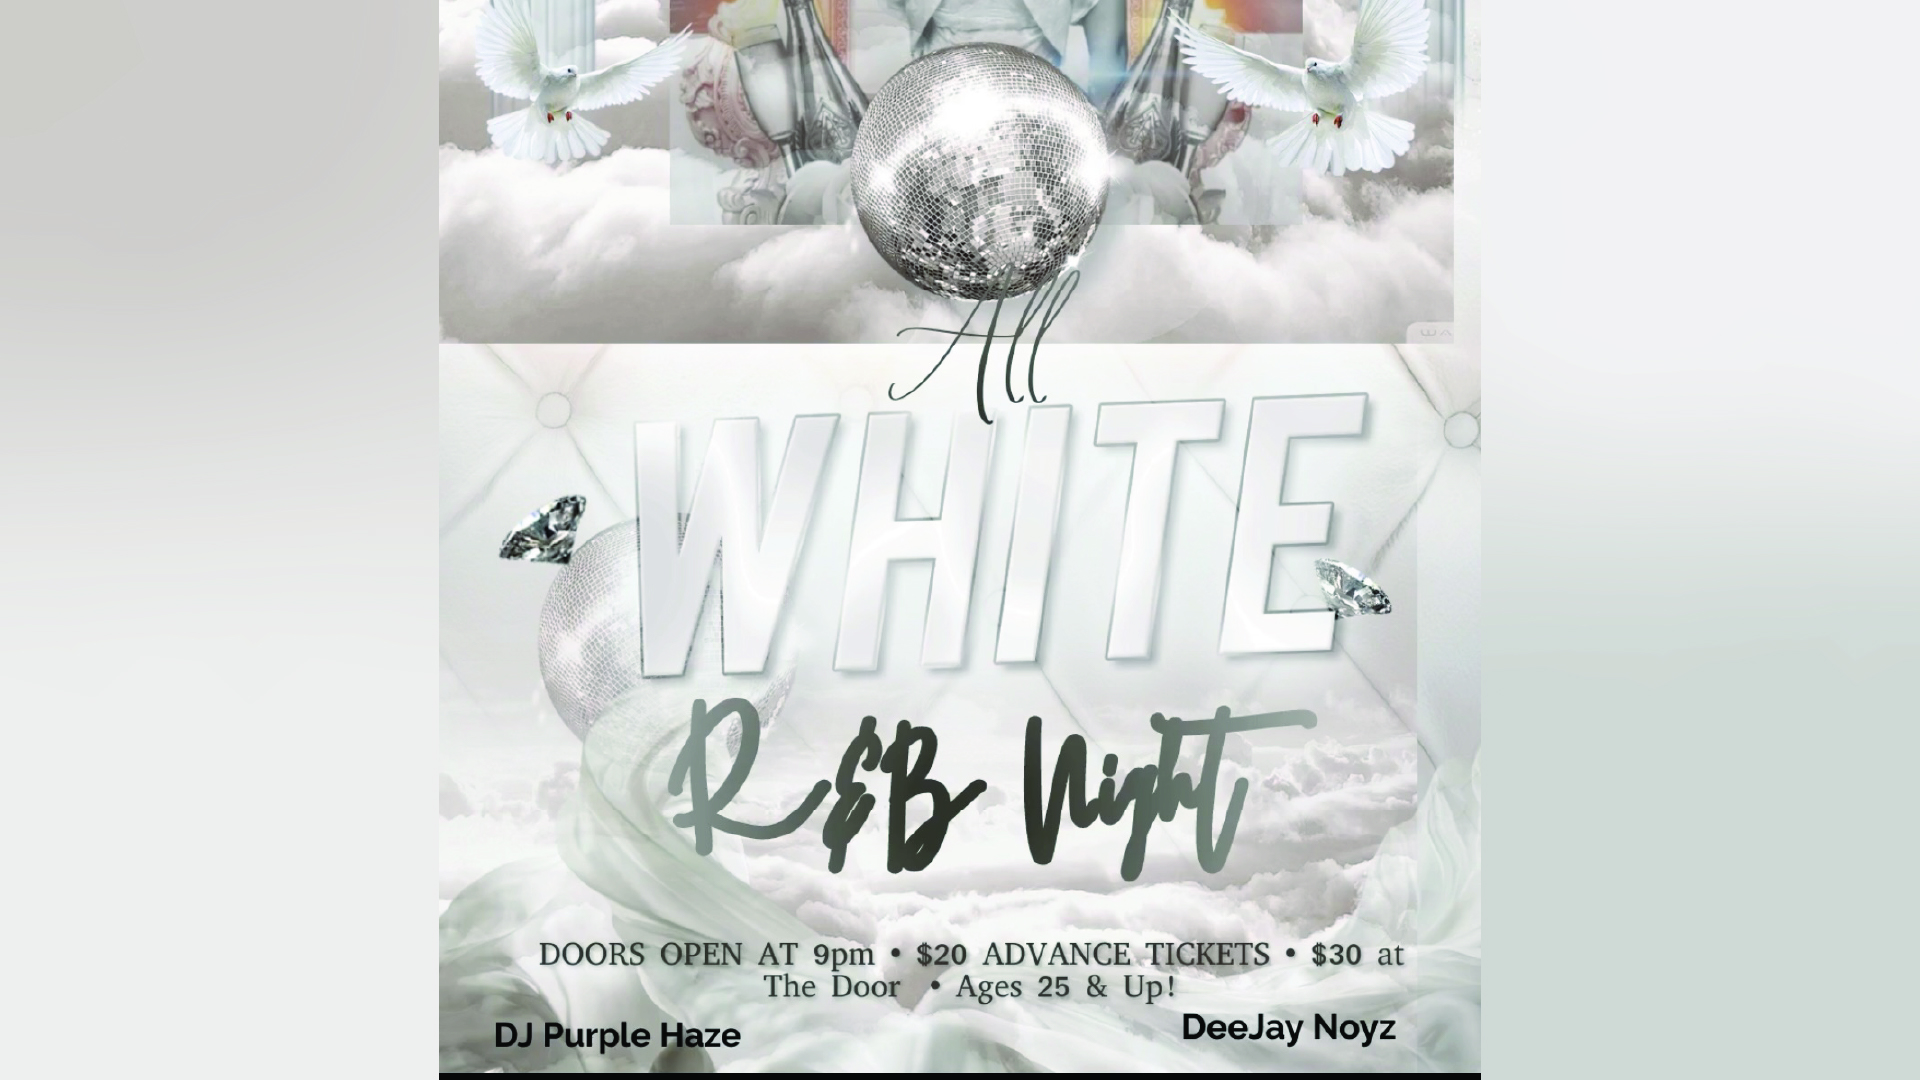 DeeJay Noyz – All White R&B Night